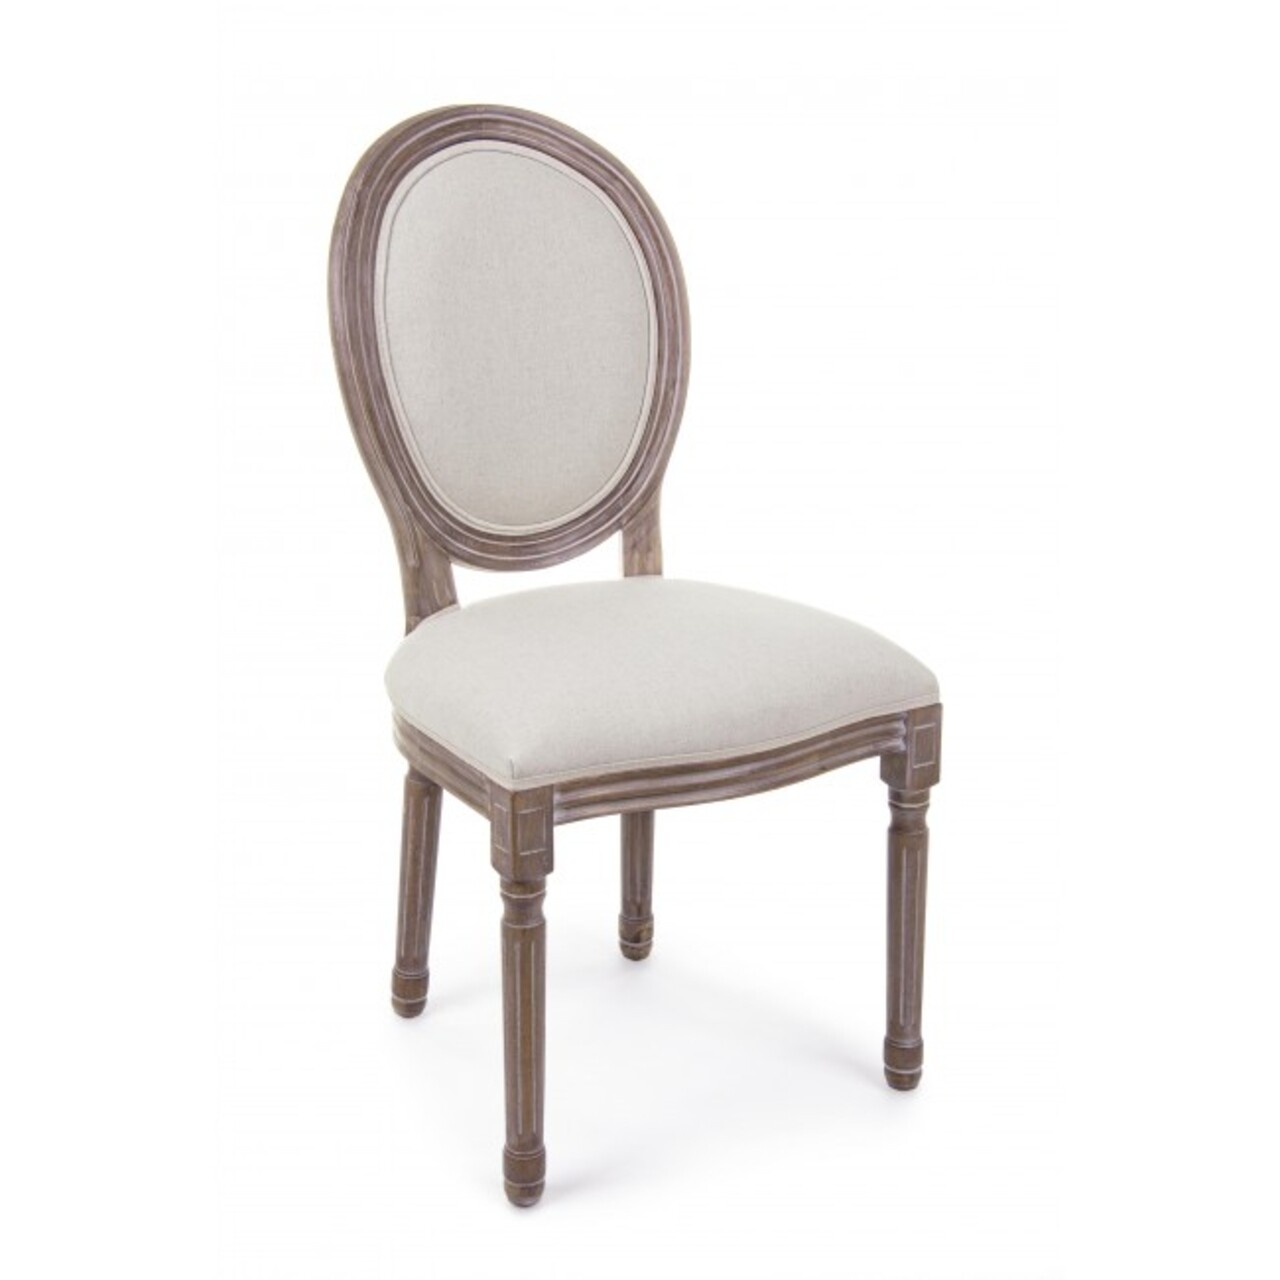 Mathilde szék, bizzotto, 48x46x96 cm, nyírfa/pamut/lenvászon, természetes